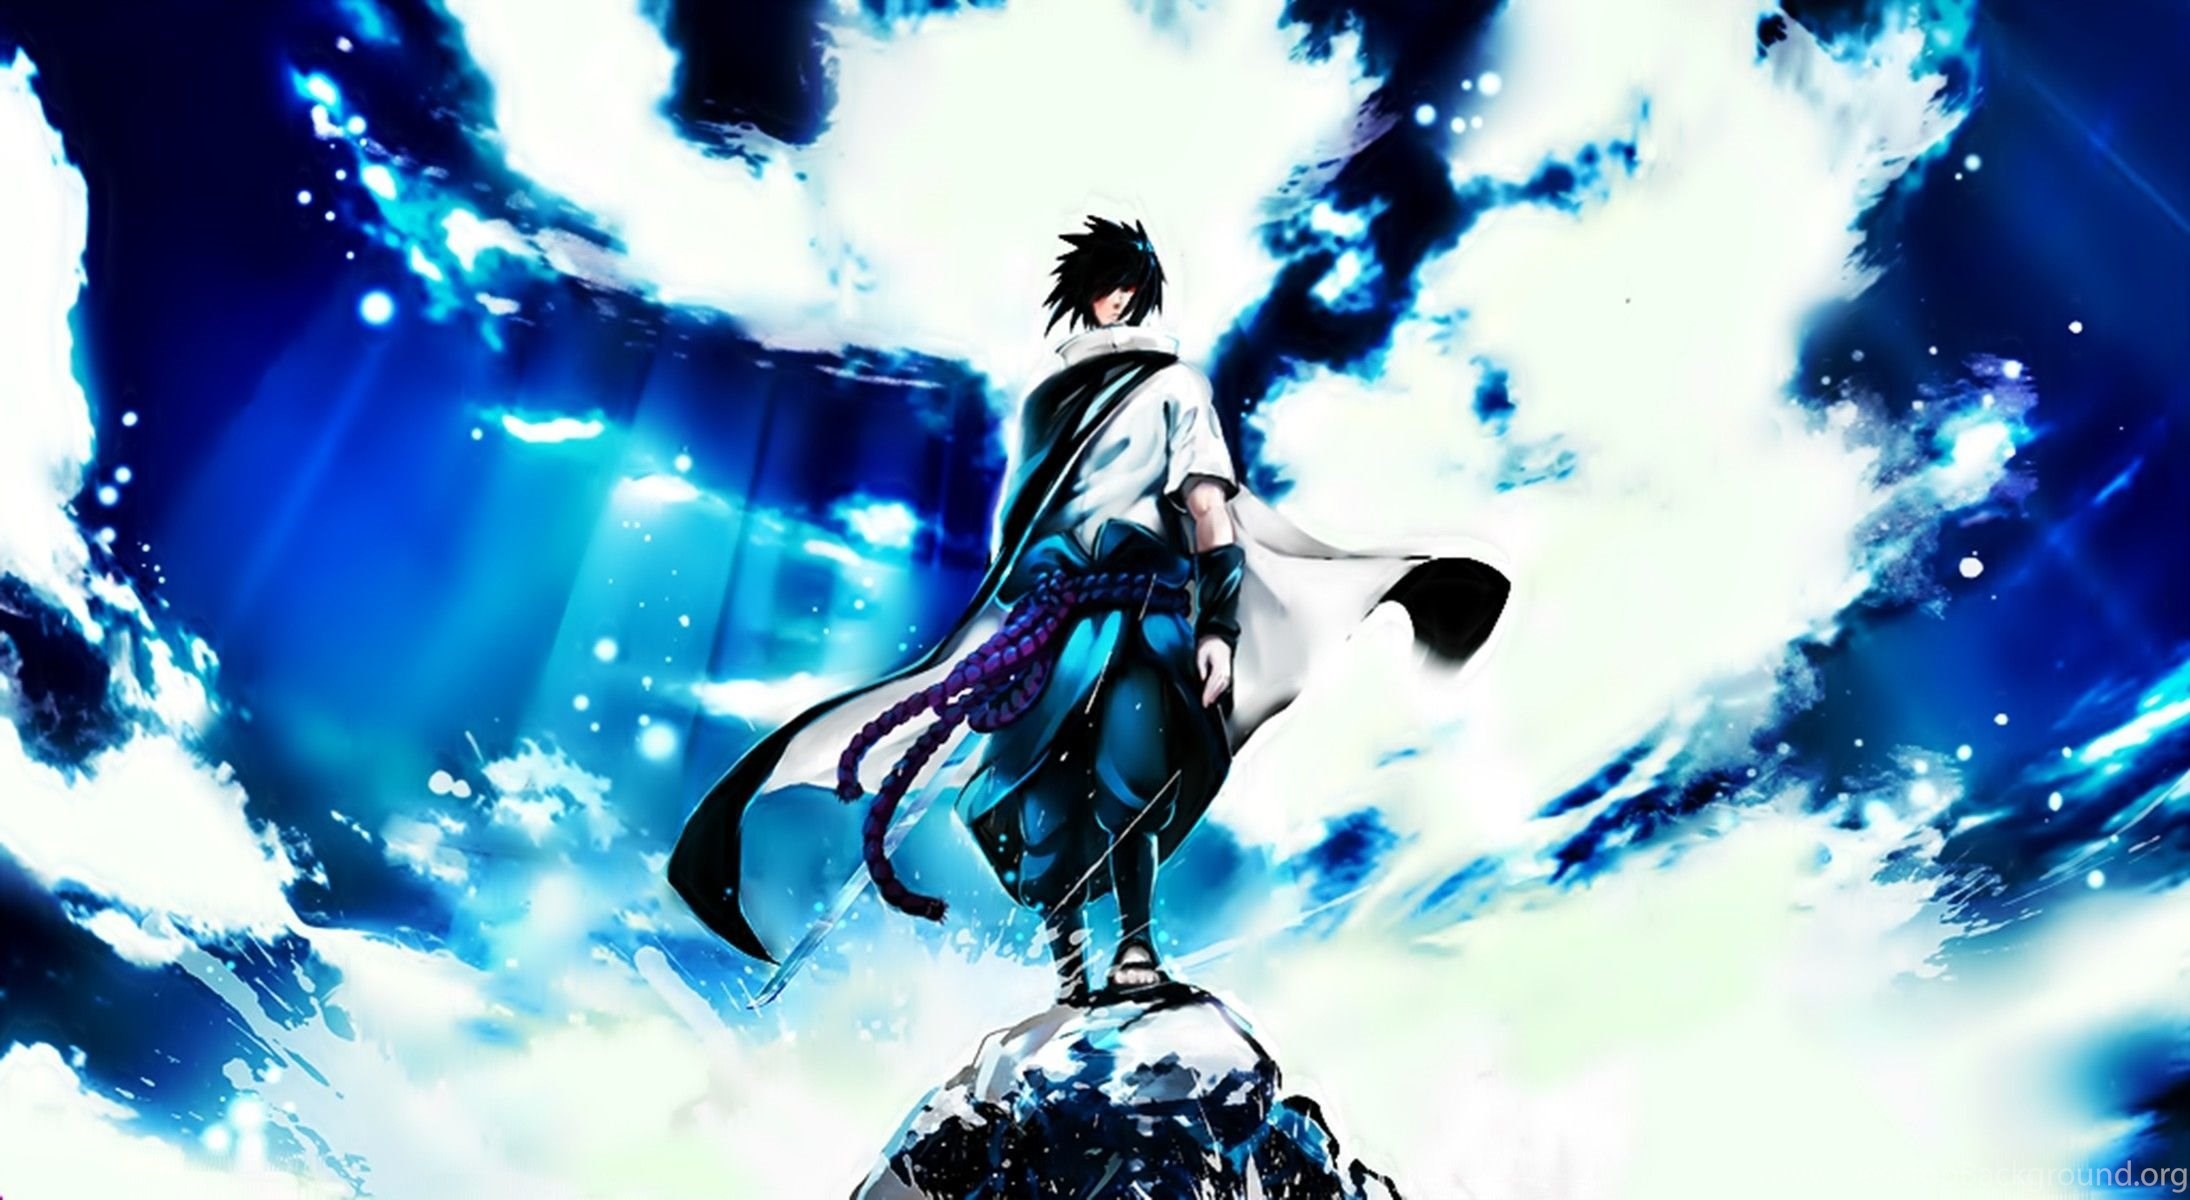 sasuke wallpaper hd,erfundener charakter,cg kunstwerk,anime,himmel,grafikdesign